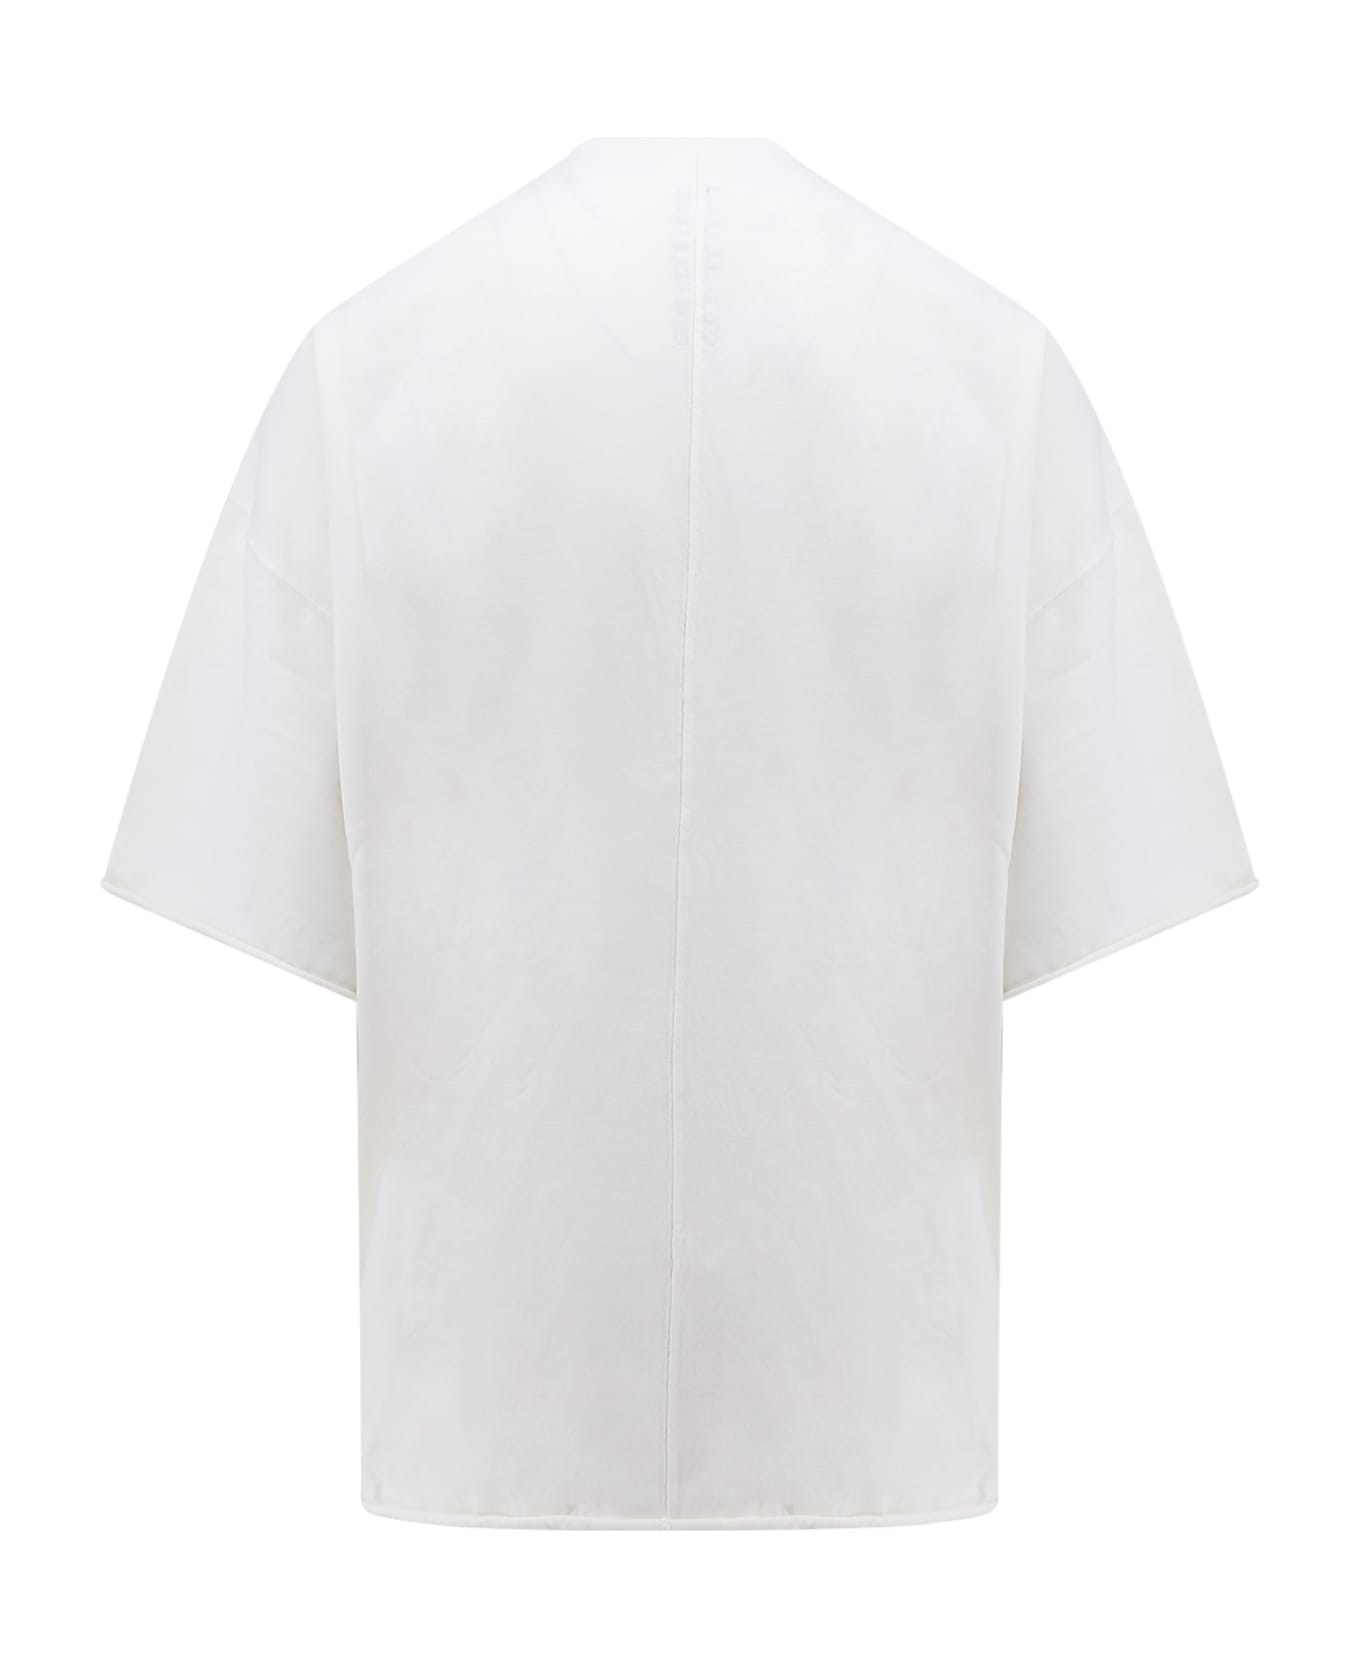 DRKSHDW T-shirt - White